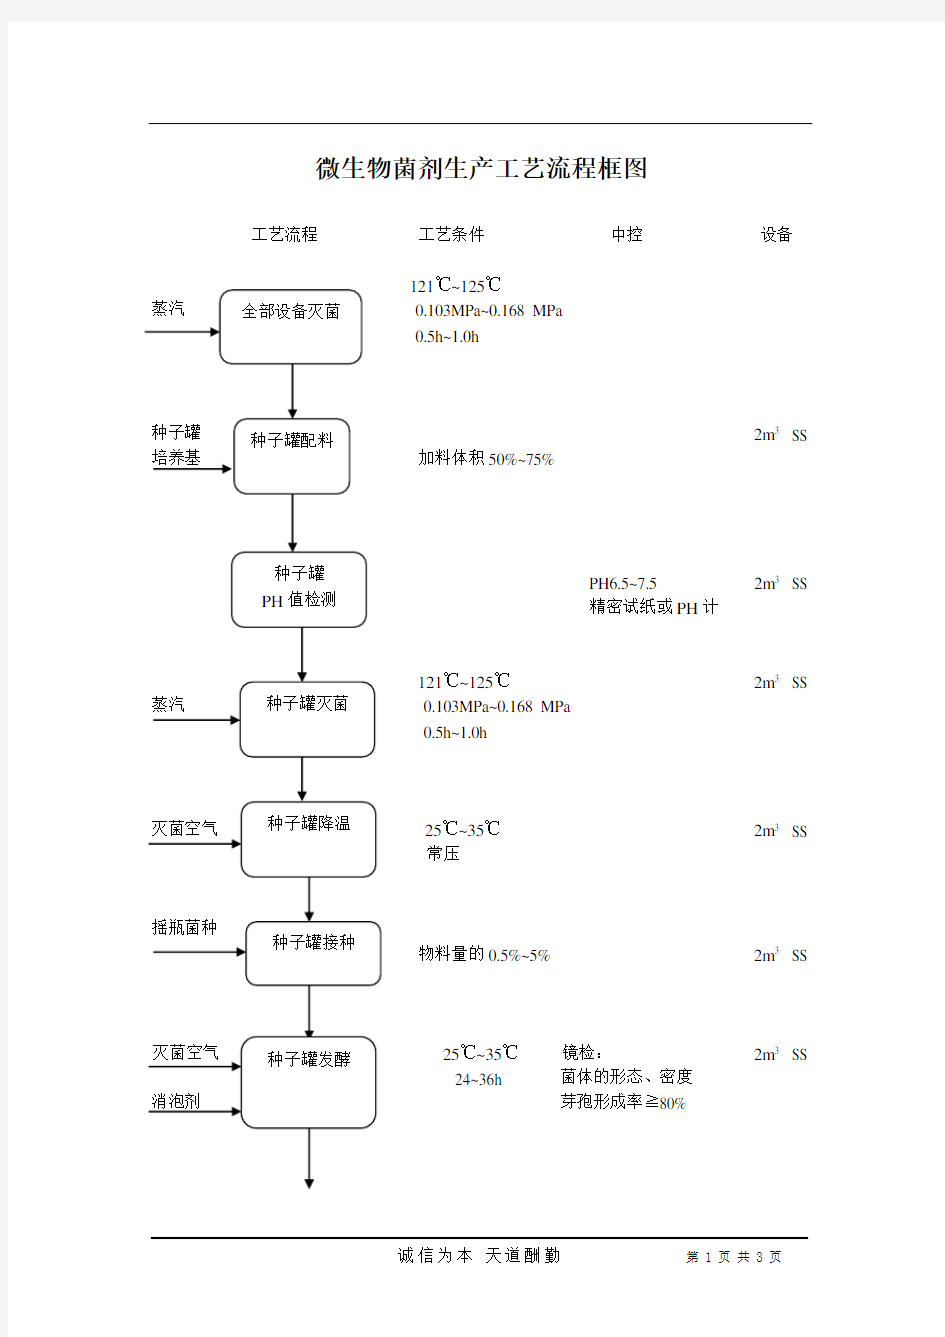 微生物菌剂生产工艺流程框图(沈宏20110120)